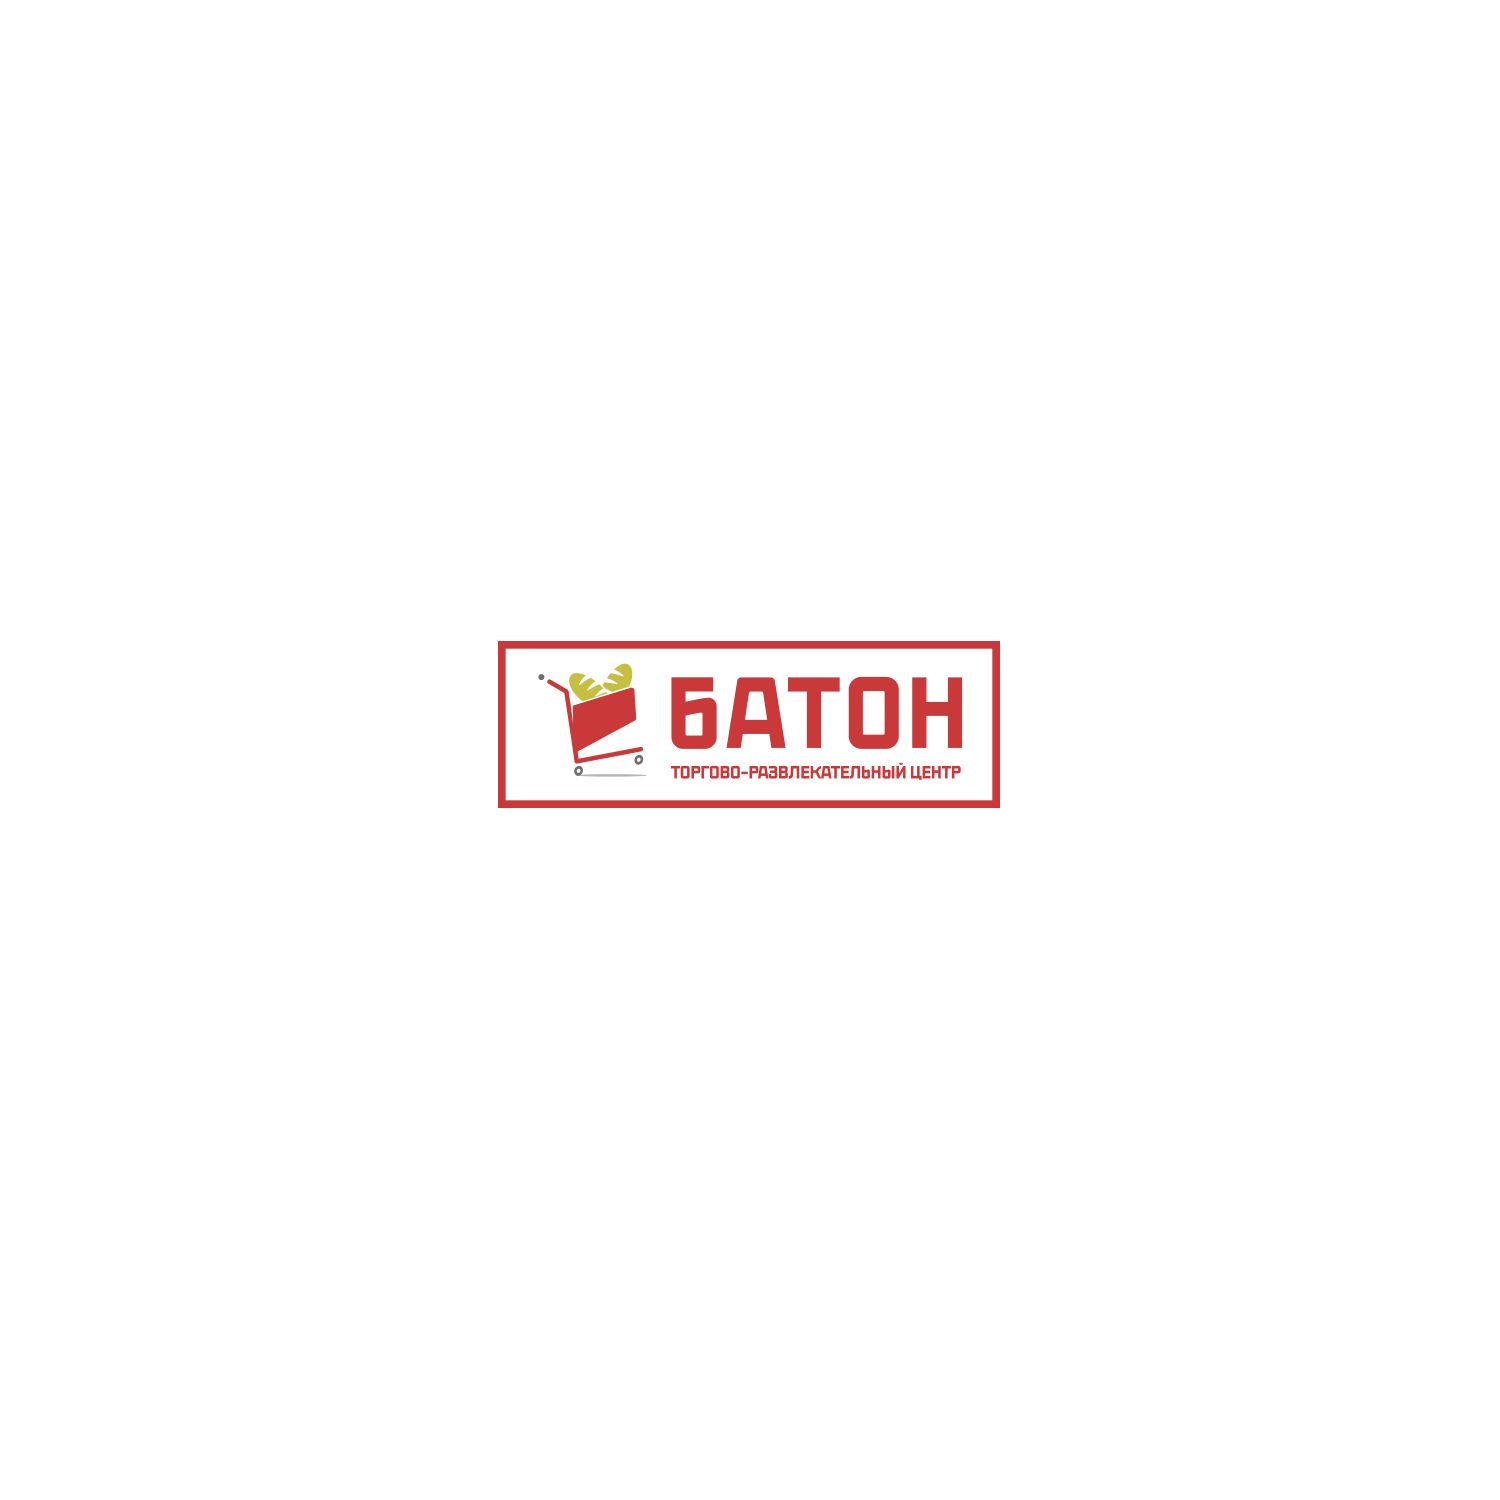 Логотип для ТРЦ (или торгово-развлекательный центр) Батон - дизайнер vnezapniydesign